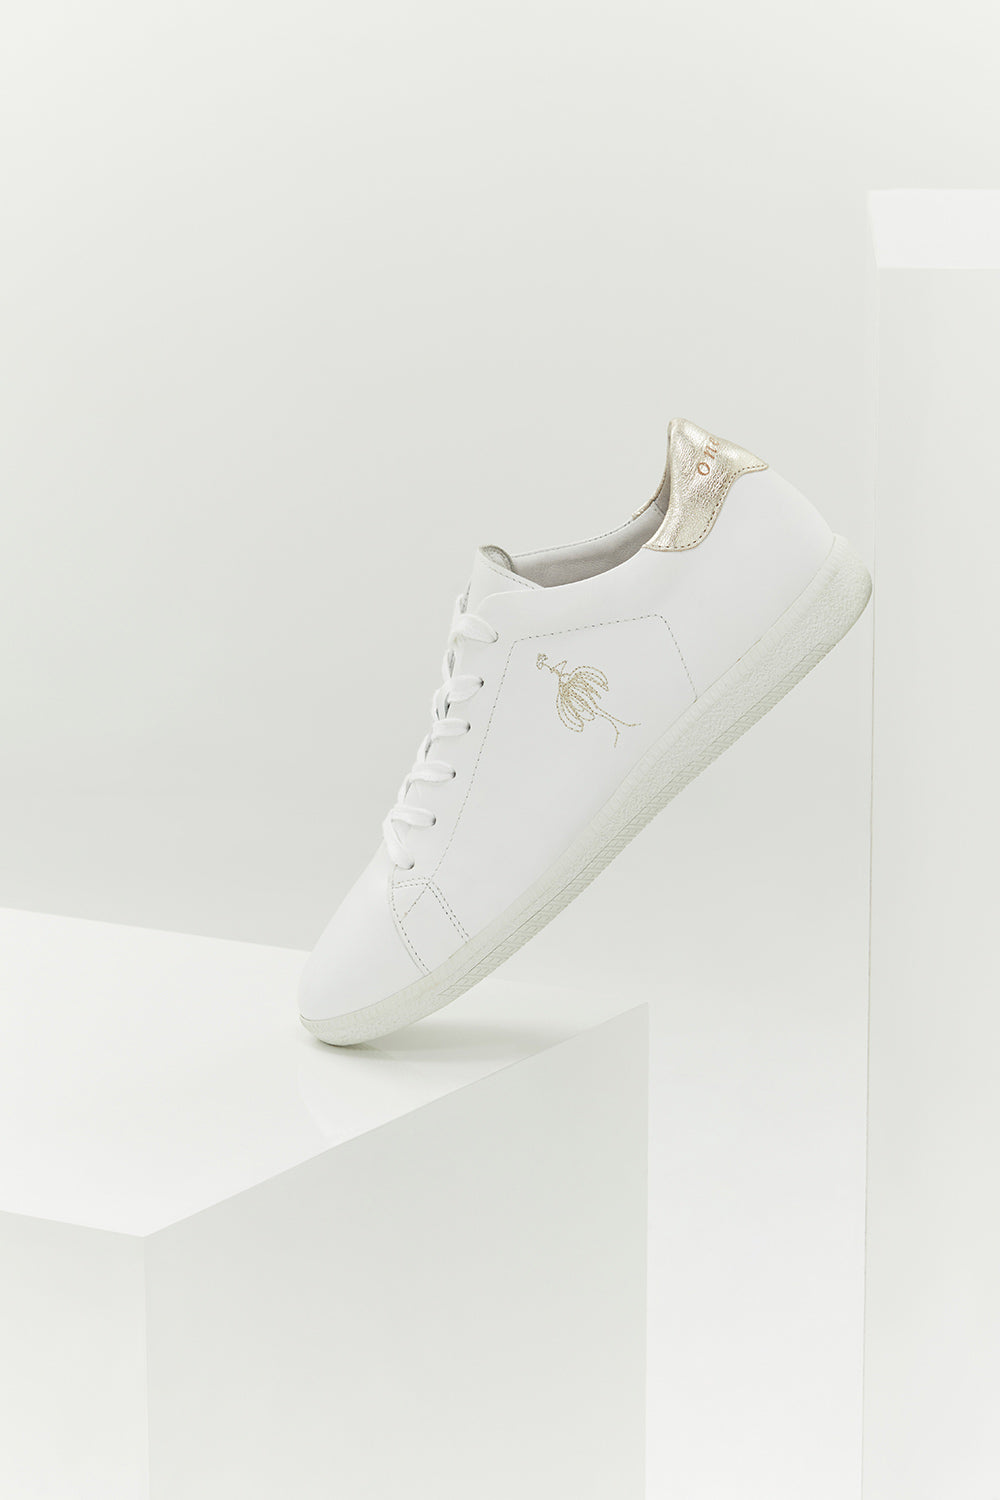 O.HAJA - Sneakers blanches et or en cuir avec danseuse brodée